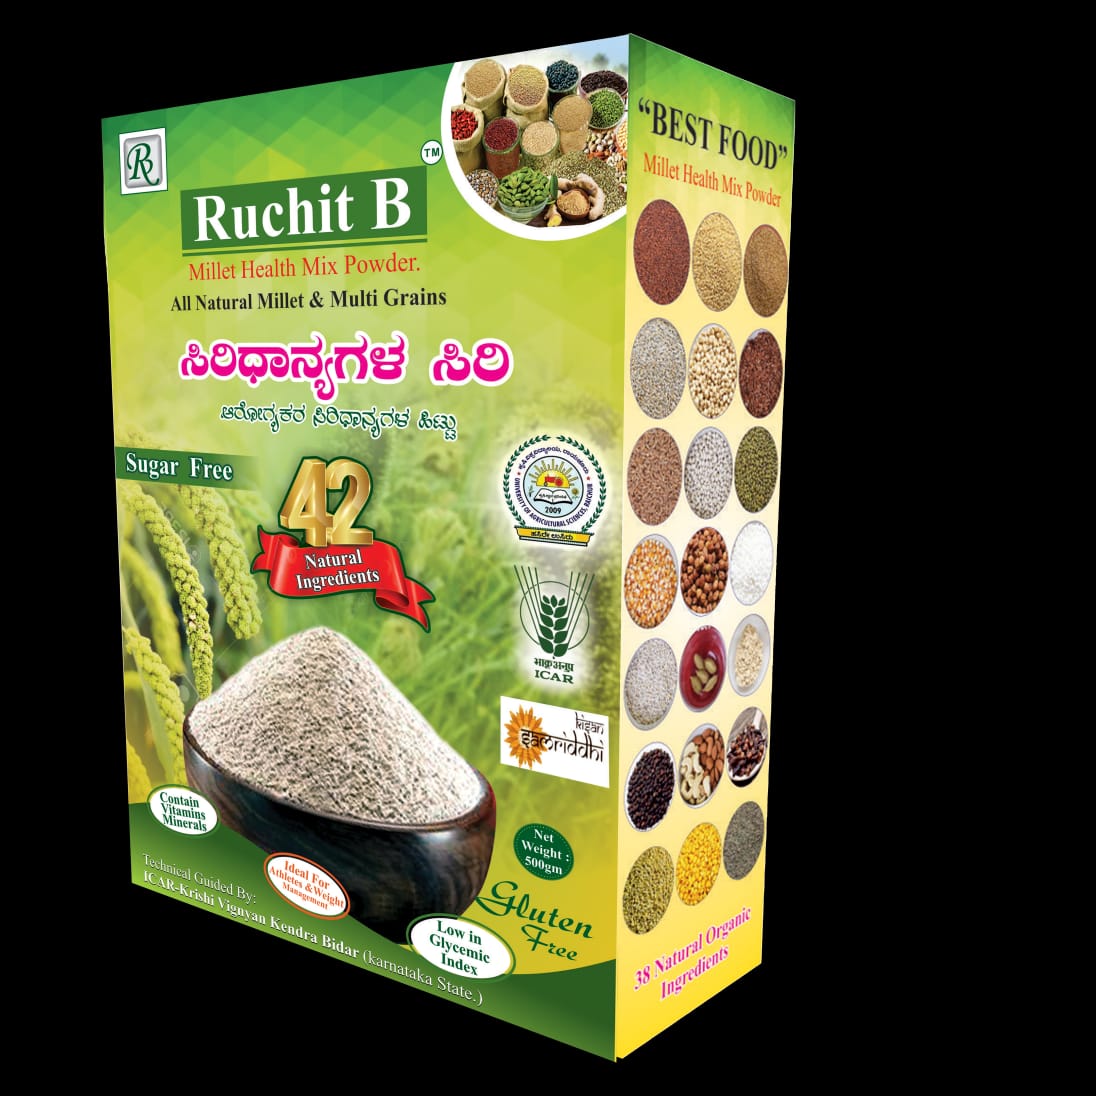 Ruchit B Millet Health Mix Powder